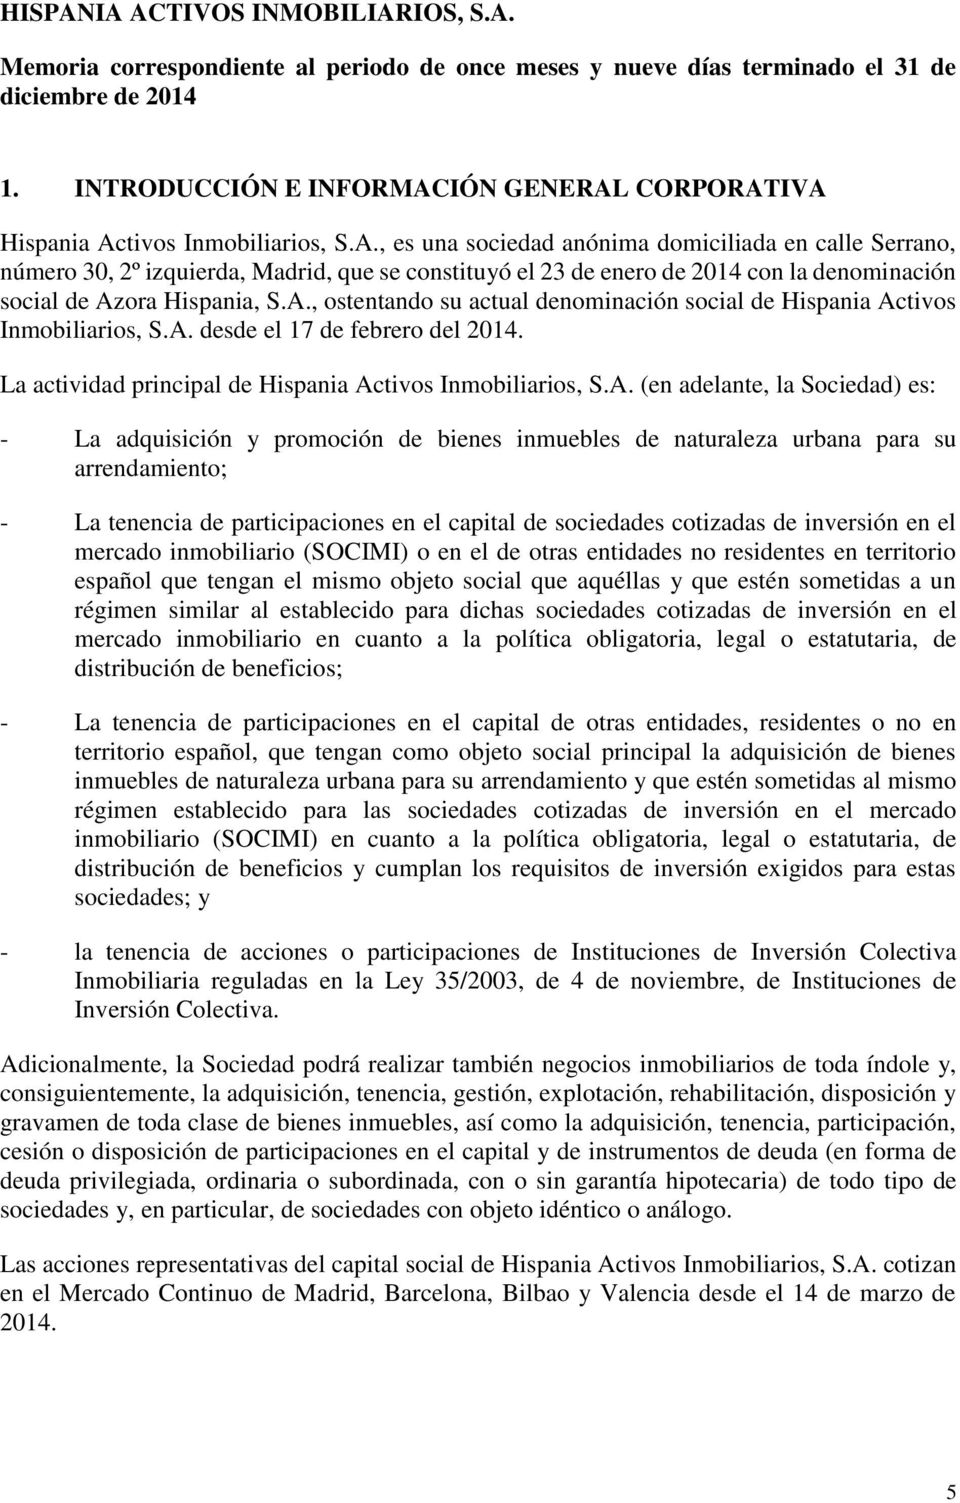 IÓN GENERAL CORPORATIVA Hispania Activos Inmobiliarios, S.A., es una sociedad anónima domiciliada en calle Serrano, número 30, 2º izquierda, Madrid, que se constituyó el 23 de enero de 2014 con la denominación social de Azora Hispania, S.